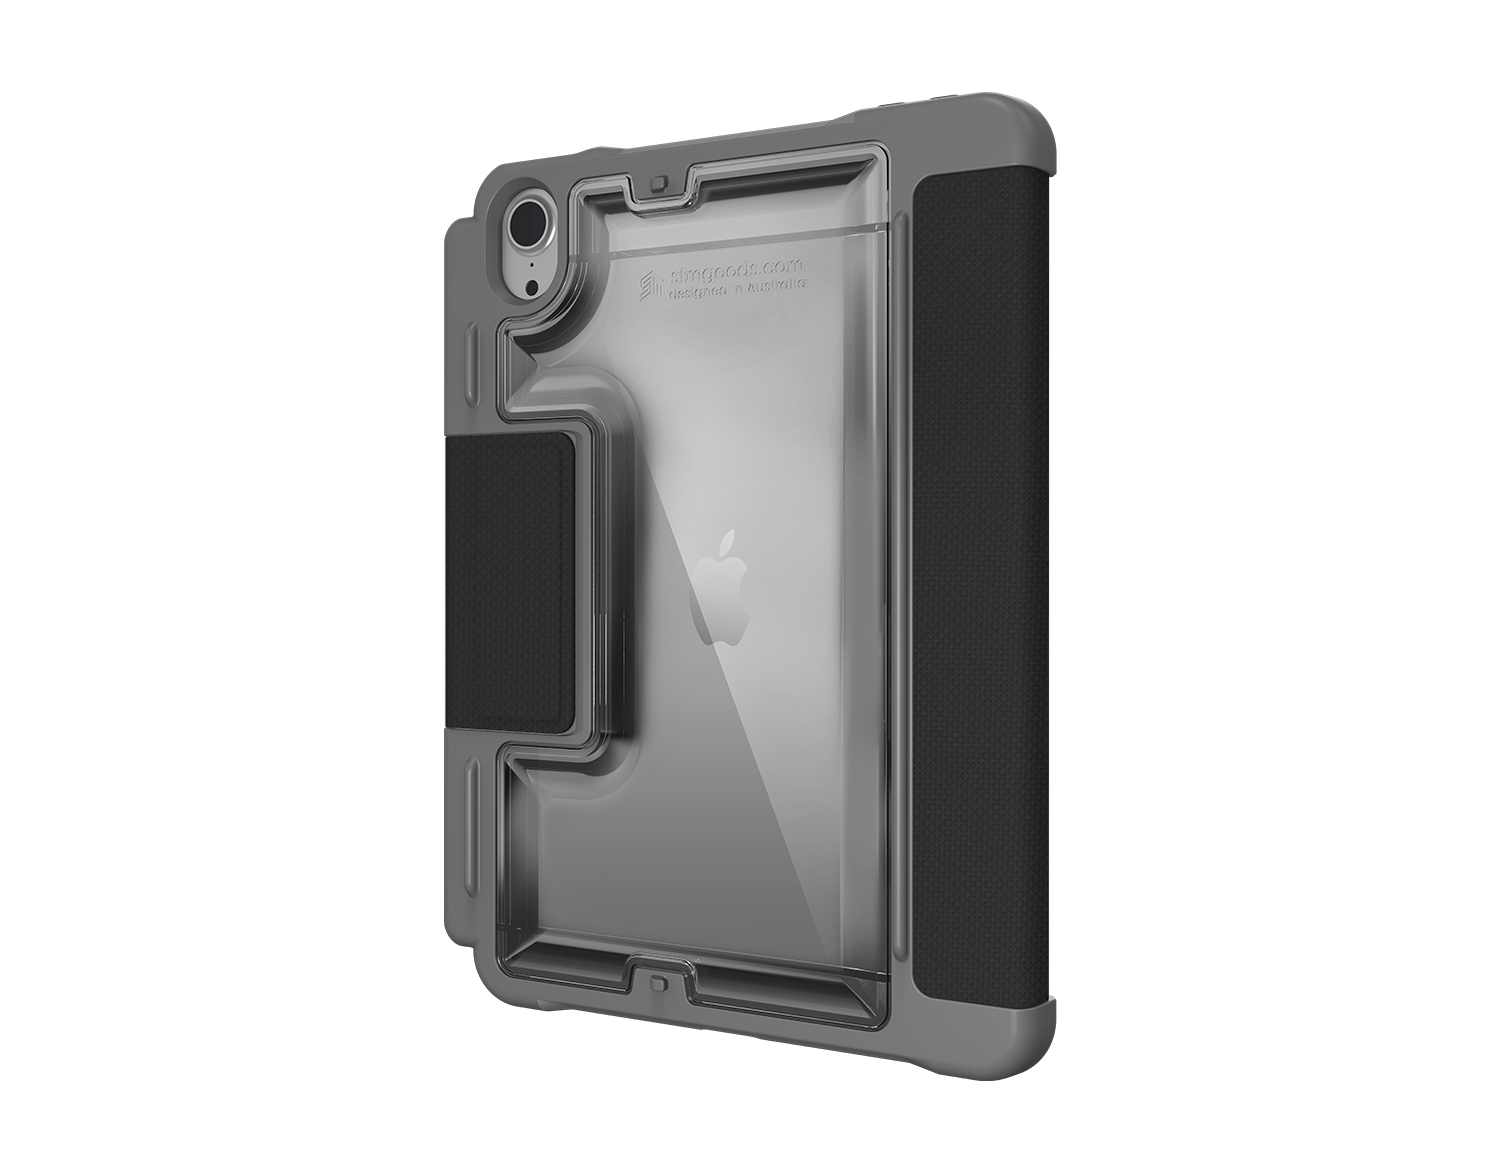 Photos - Tablet Case STM DUX PLUS 21.1 cm  Folio Black -222-341GX-01 (8.3")